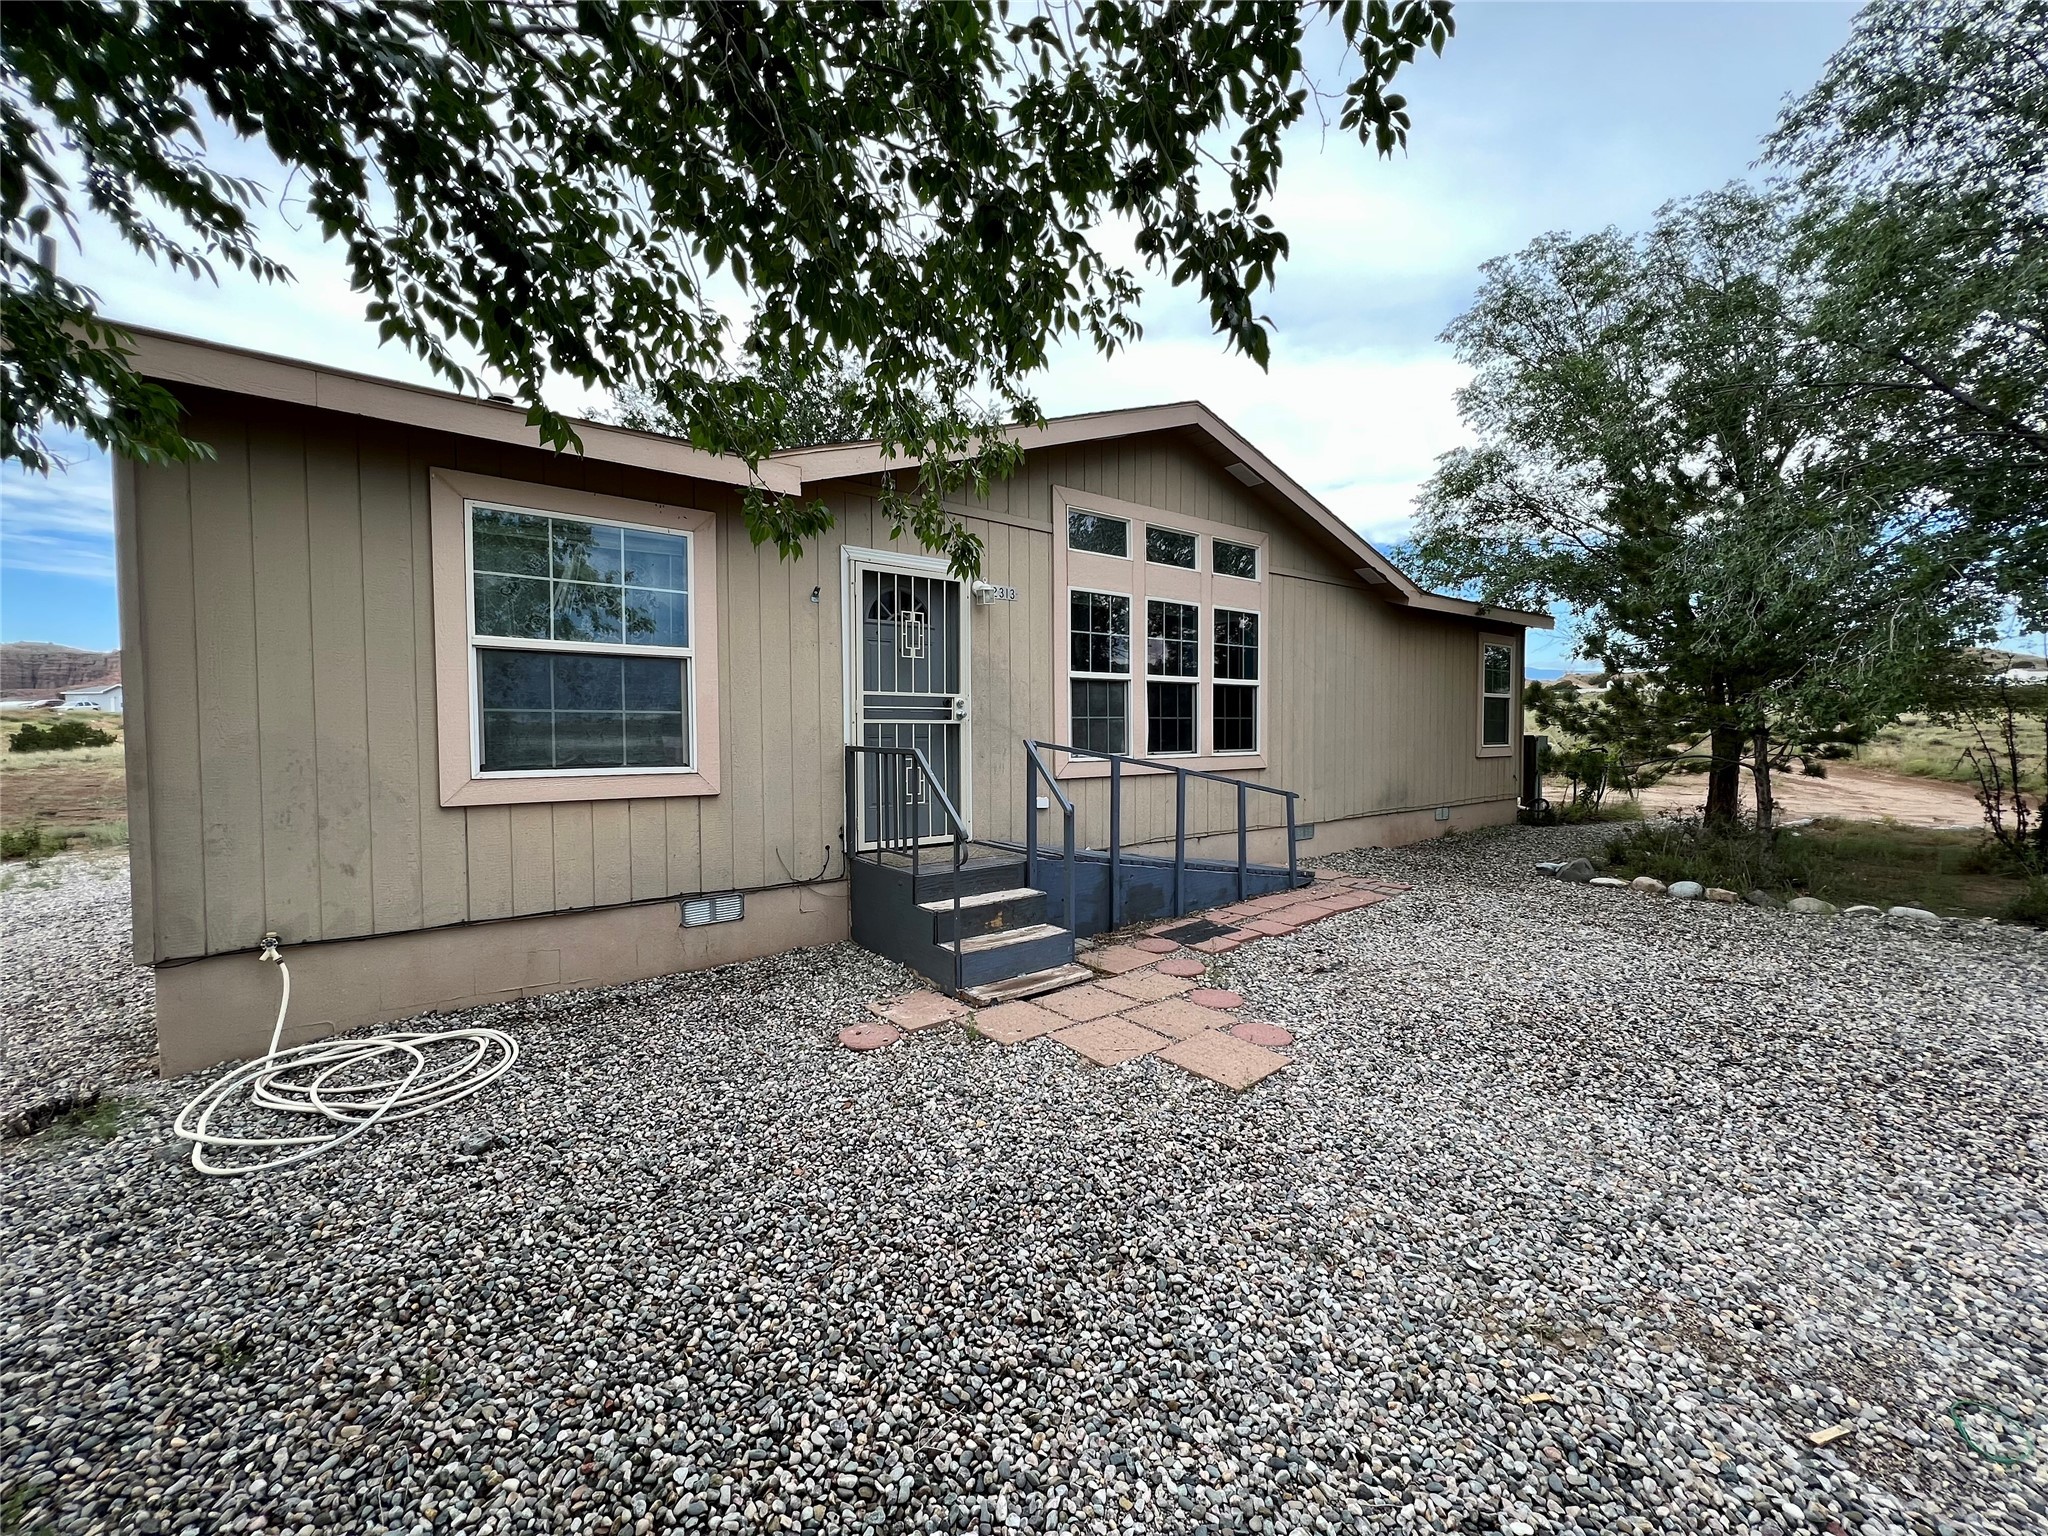 2313 Espinoza Lane, El Llano, New Mexico 87532, 3 Bedrooms Bedrooms, ,2 BathroomsBathrooms,Residential,For Sale,2313 Espinoza Lane,202232712